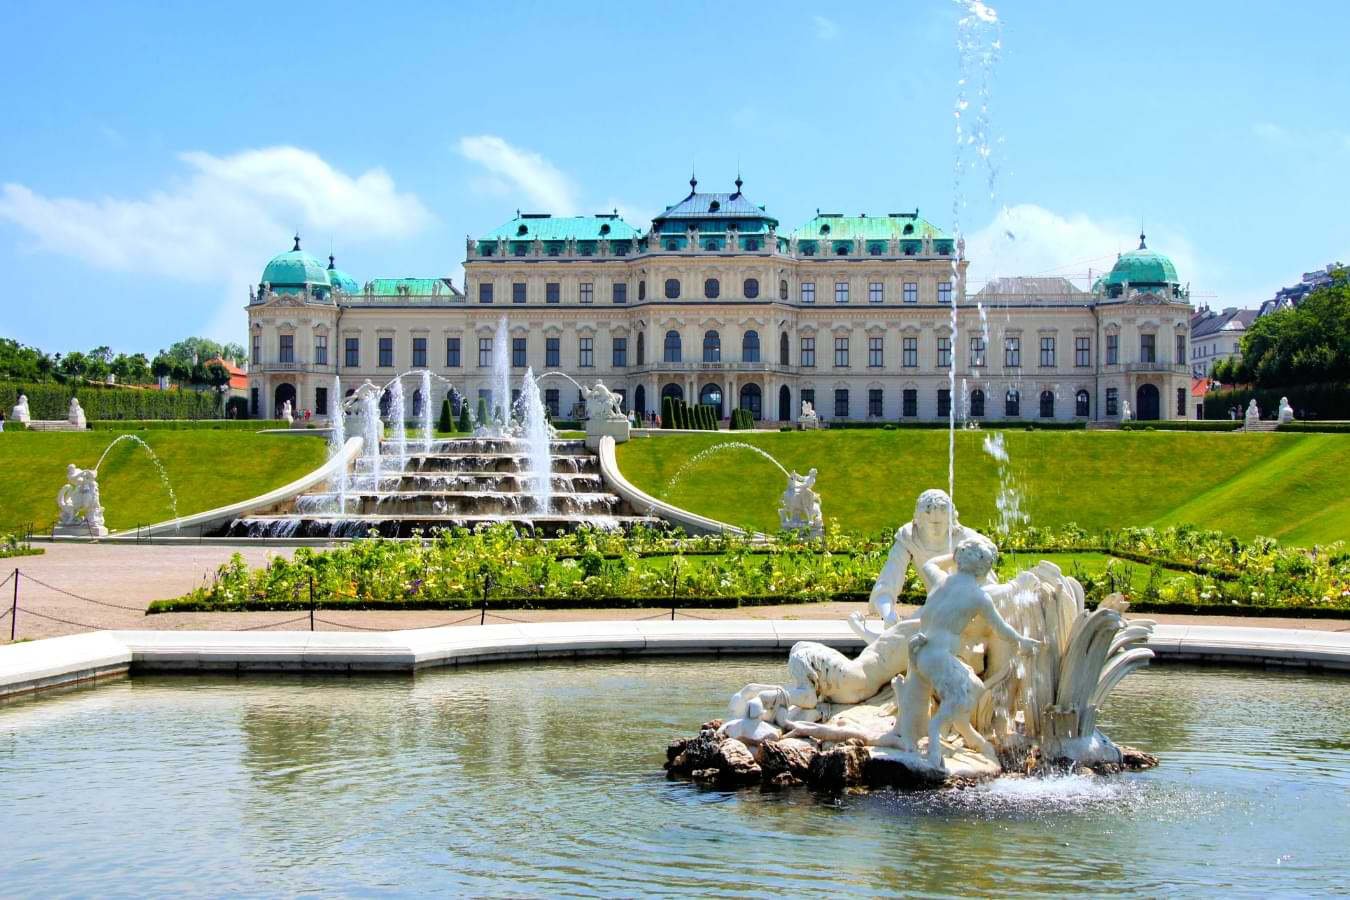 autria-belvedere-garden-and-palace-vienna